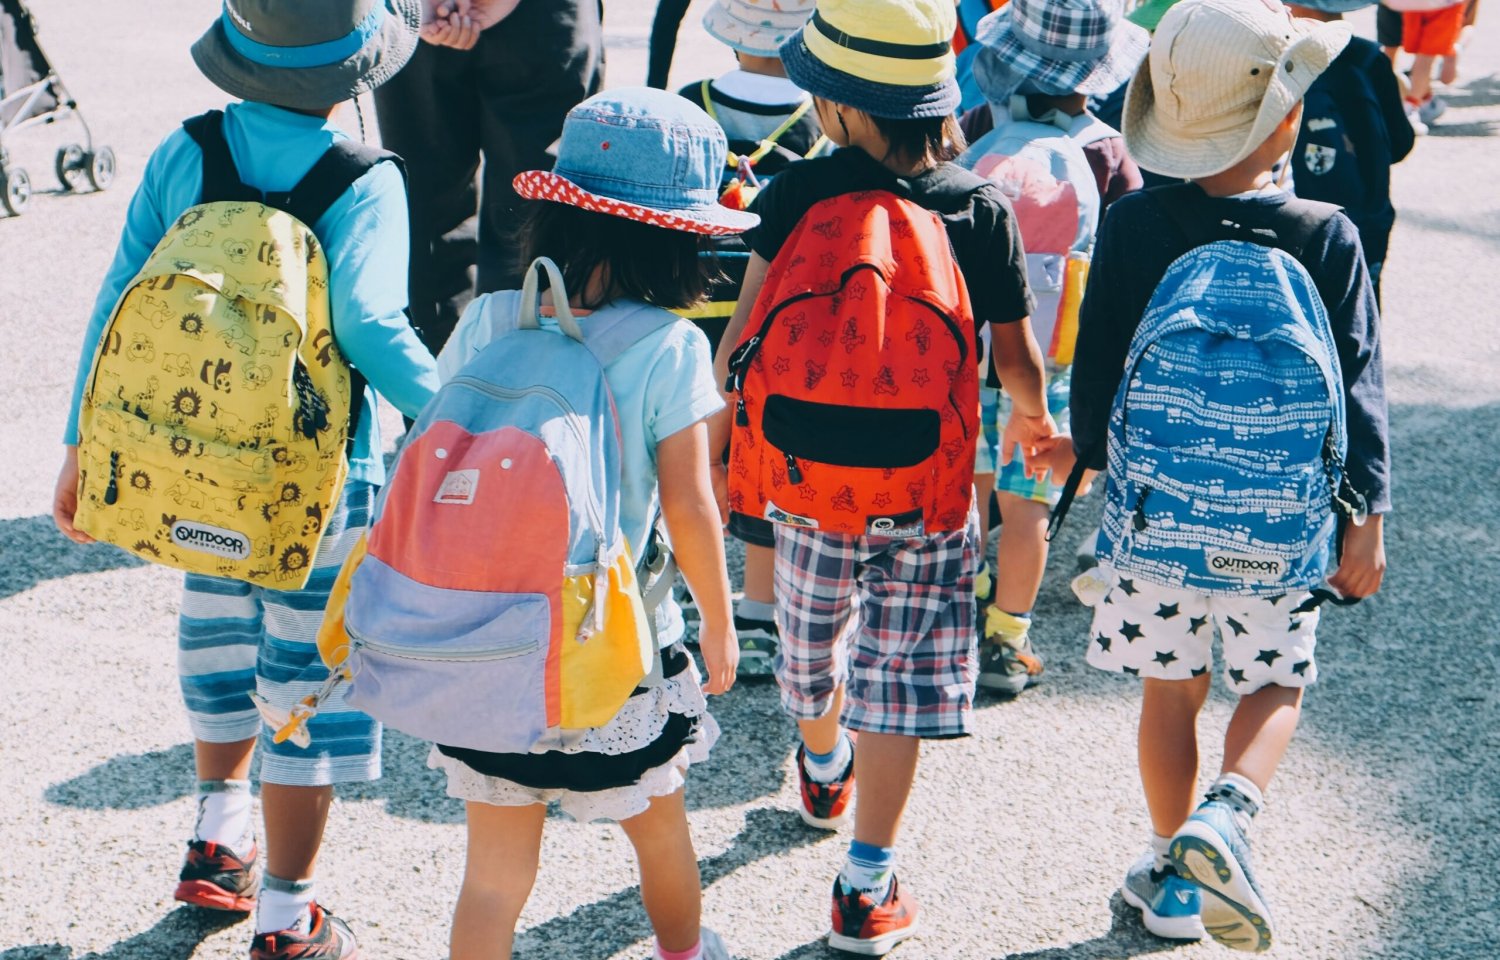 Trẻ em Nhật có dáng đi khác thường và khỏe mạnh hơn so với các nước khác trên thế giới nhờ một lý do đặc biệt: Chế độ ăn - Ảnh 1.